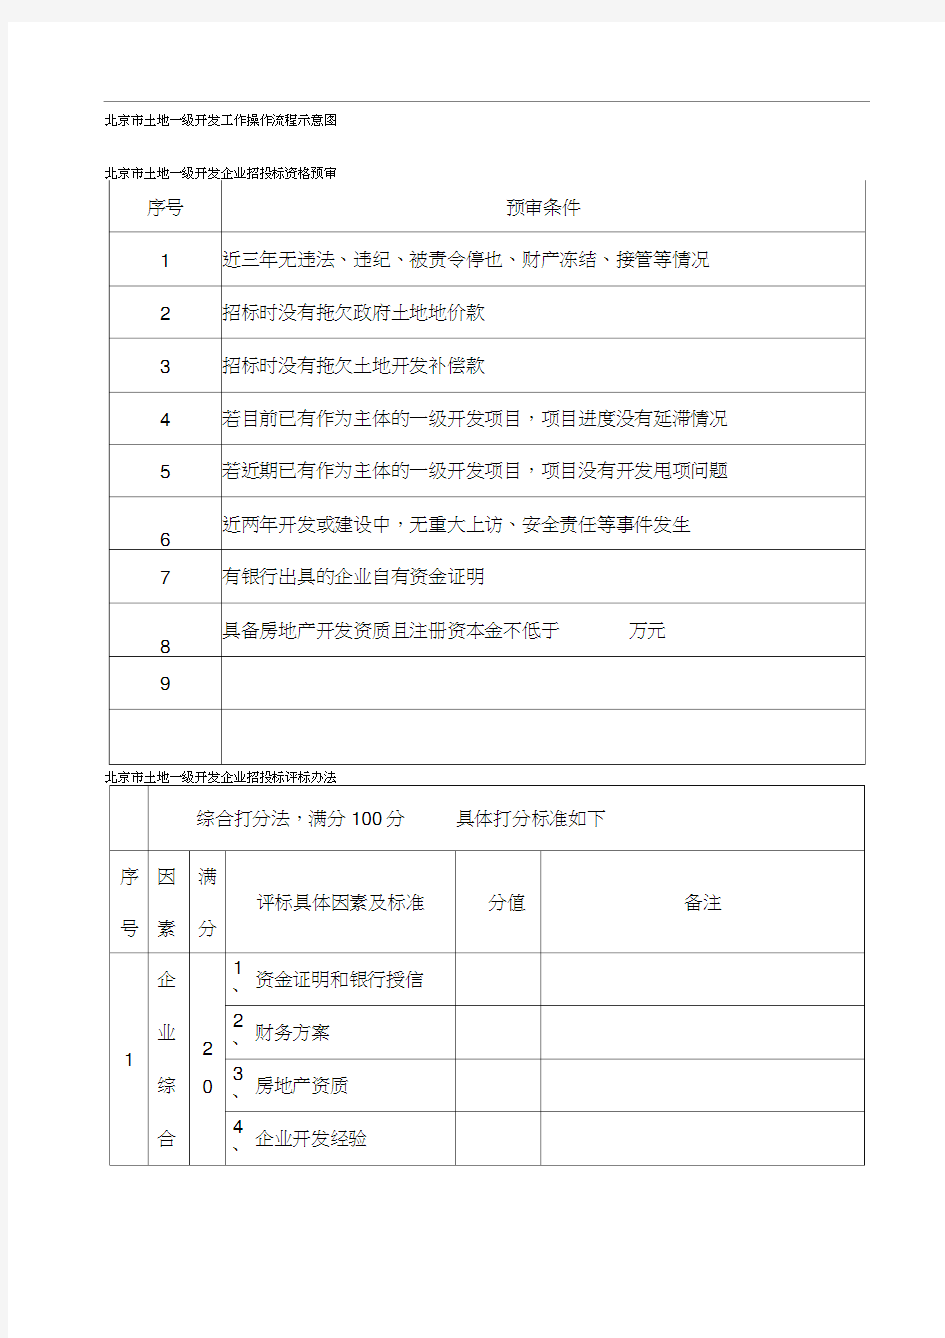 北京市土地一级开发工作操作流程示意图